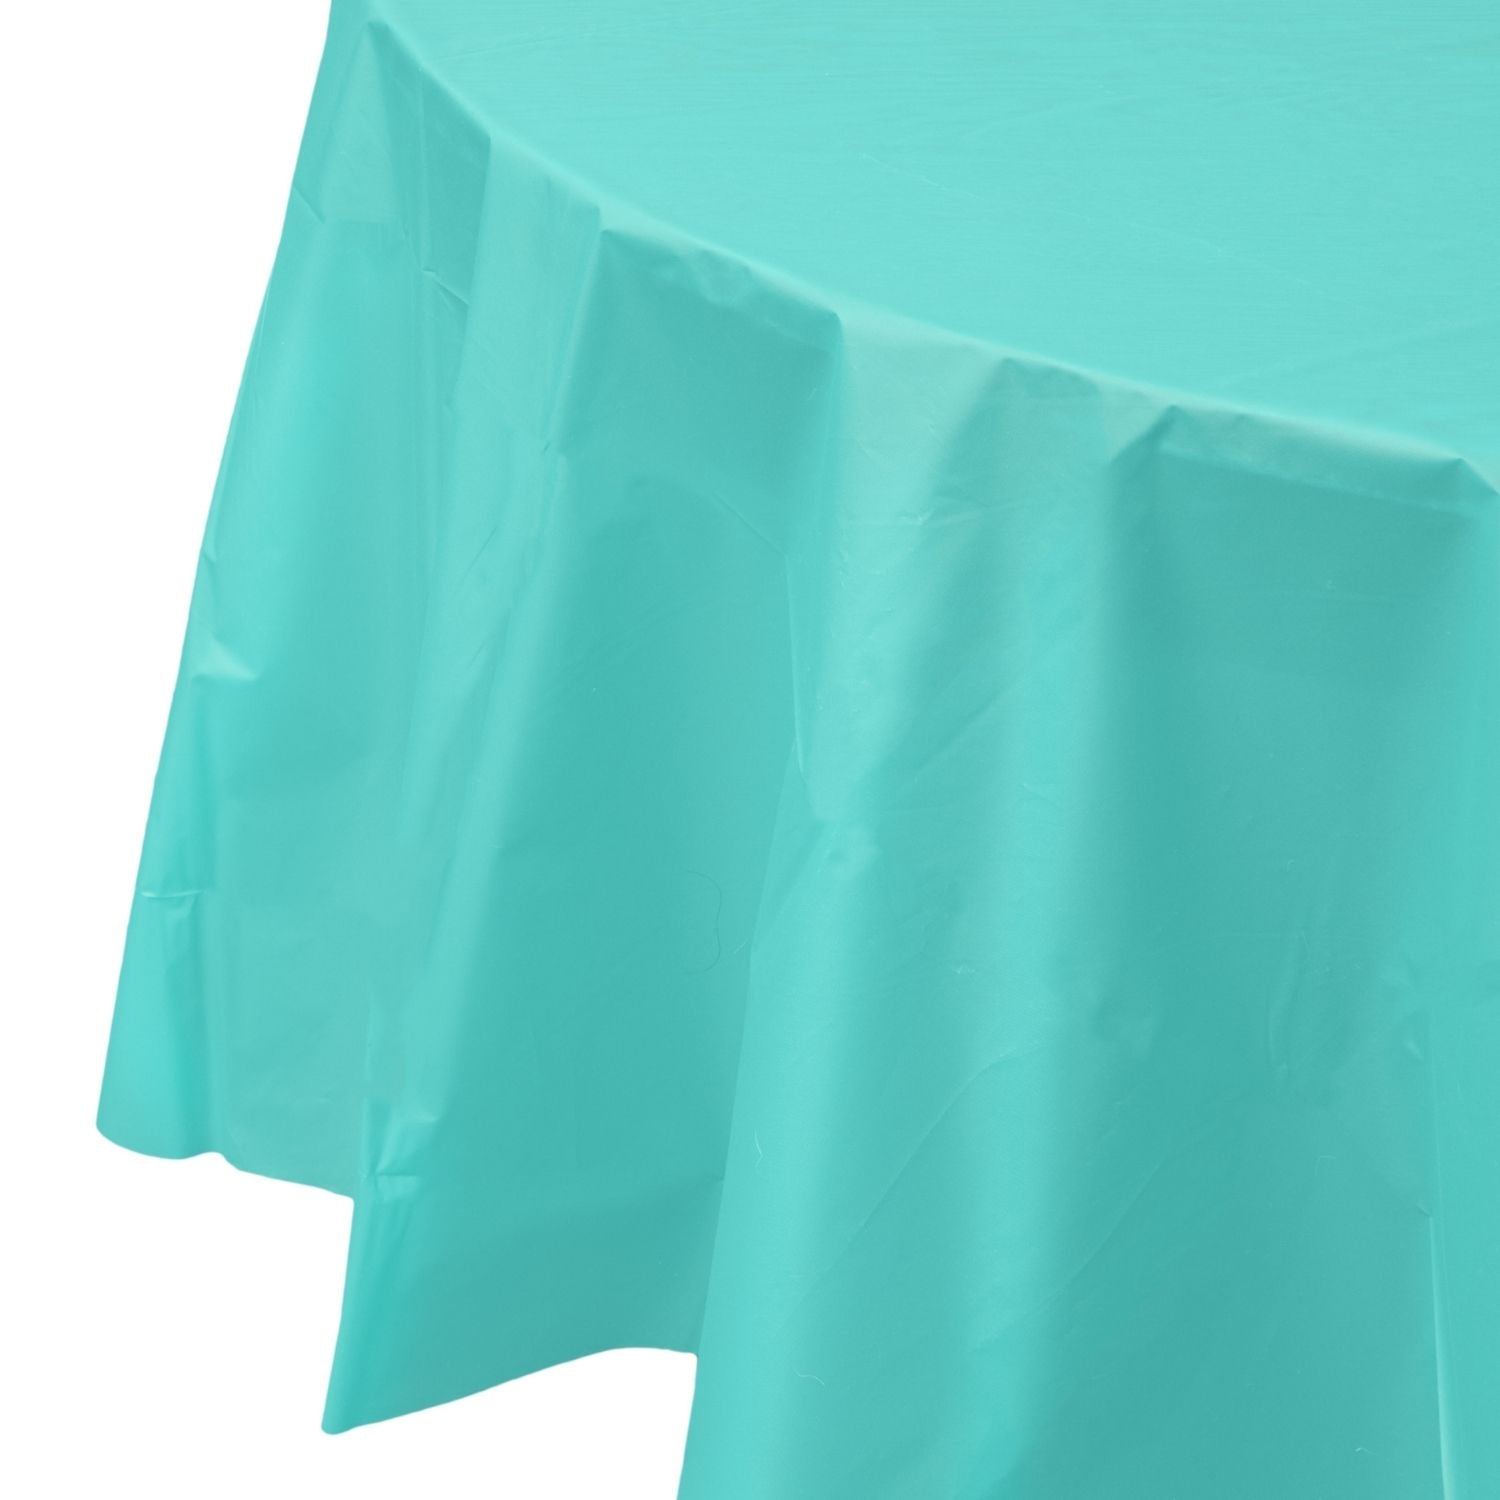 Premium Round Aqua Plastic Tablecloth | 96 Count - Yom Tov Settings